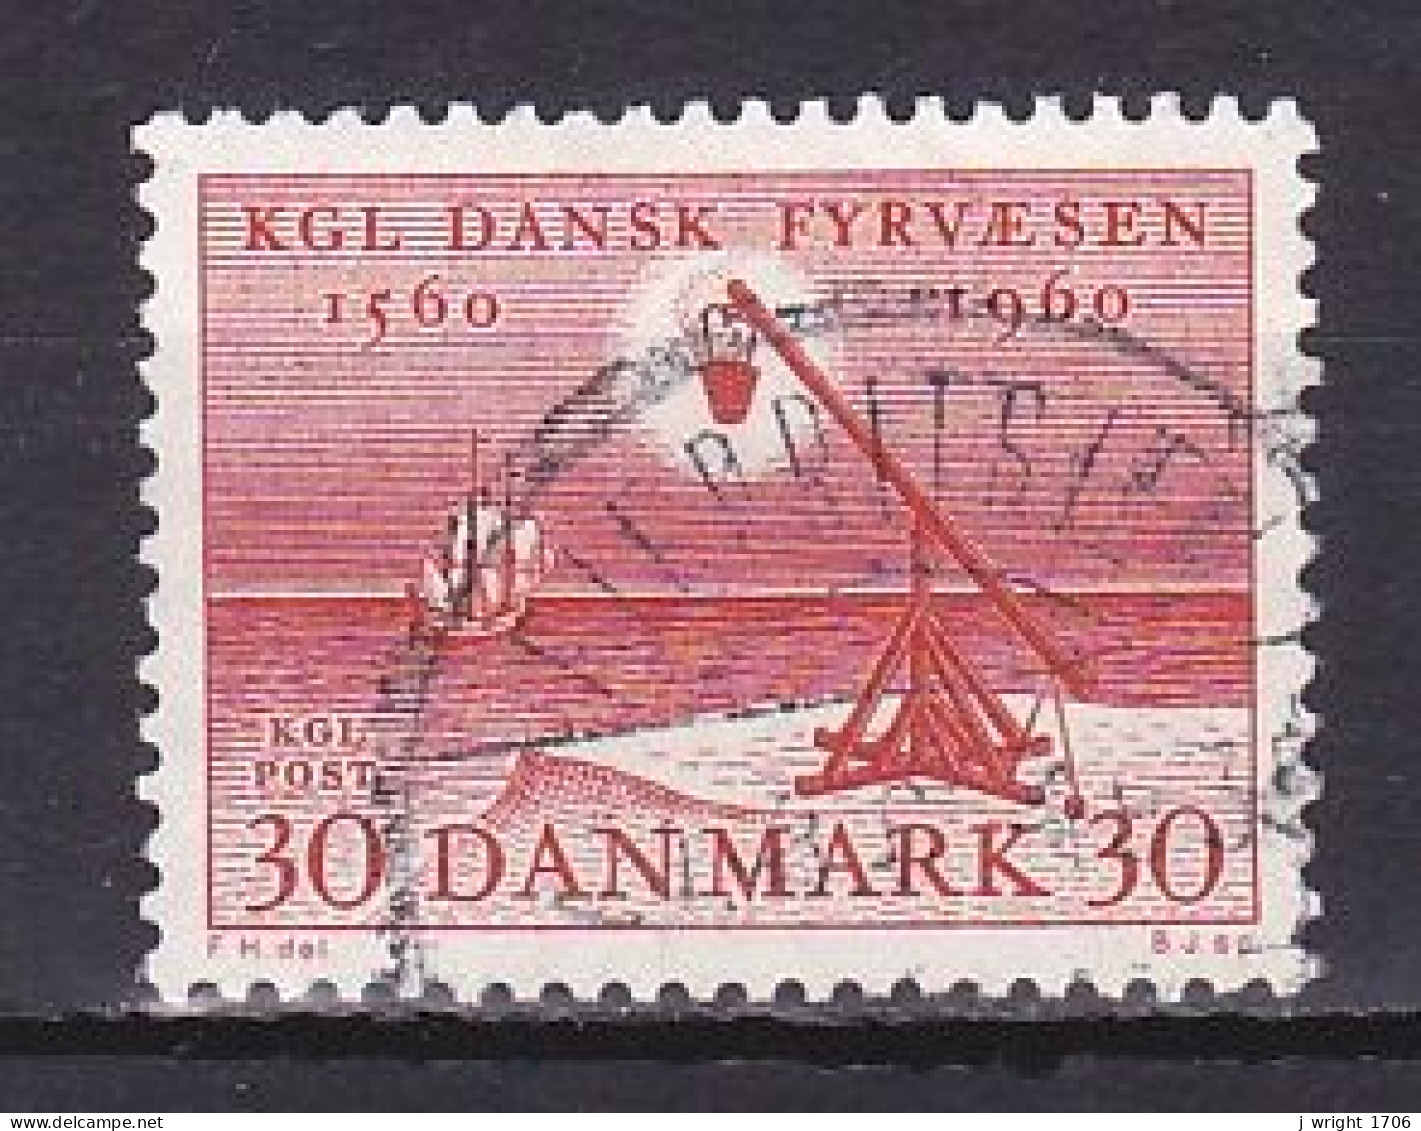 Denmark, 1960, Lighthouse Service 400th Anniv, 30ø, USED - Usado